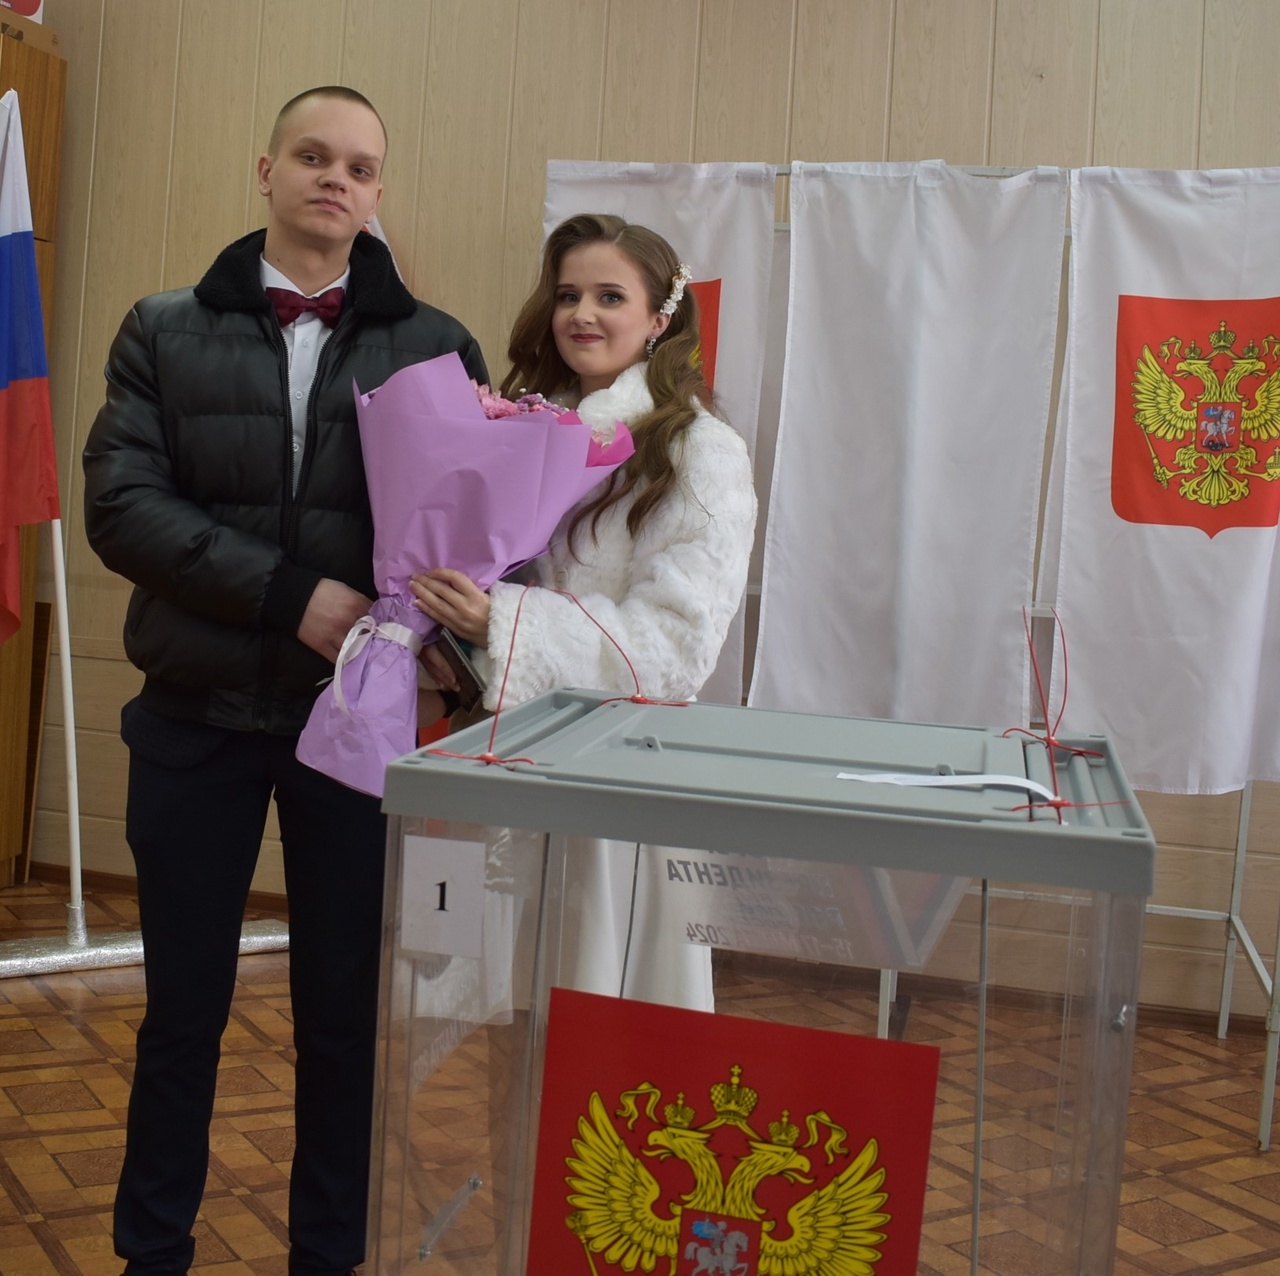 Двойной праздник в Соколе: день выборов совпал с днем бракосочетания.